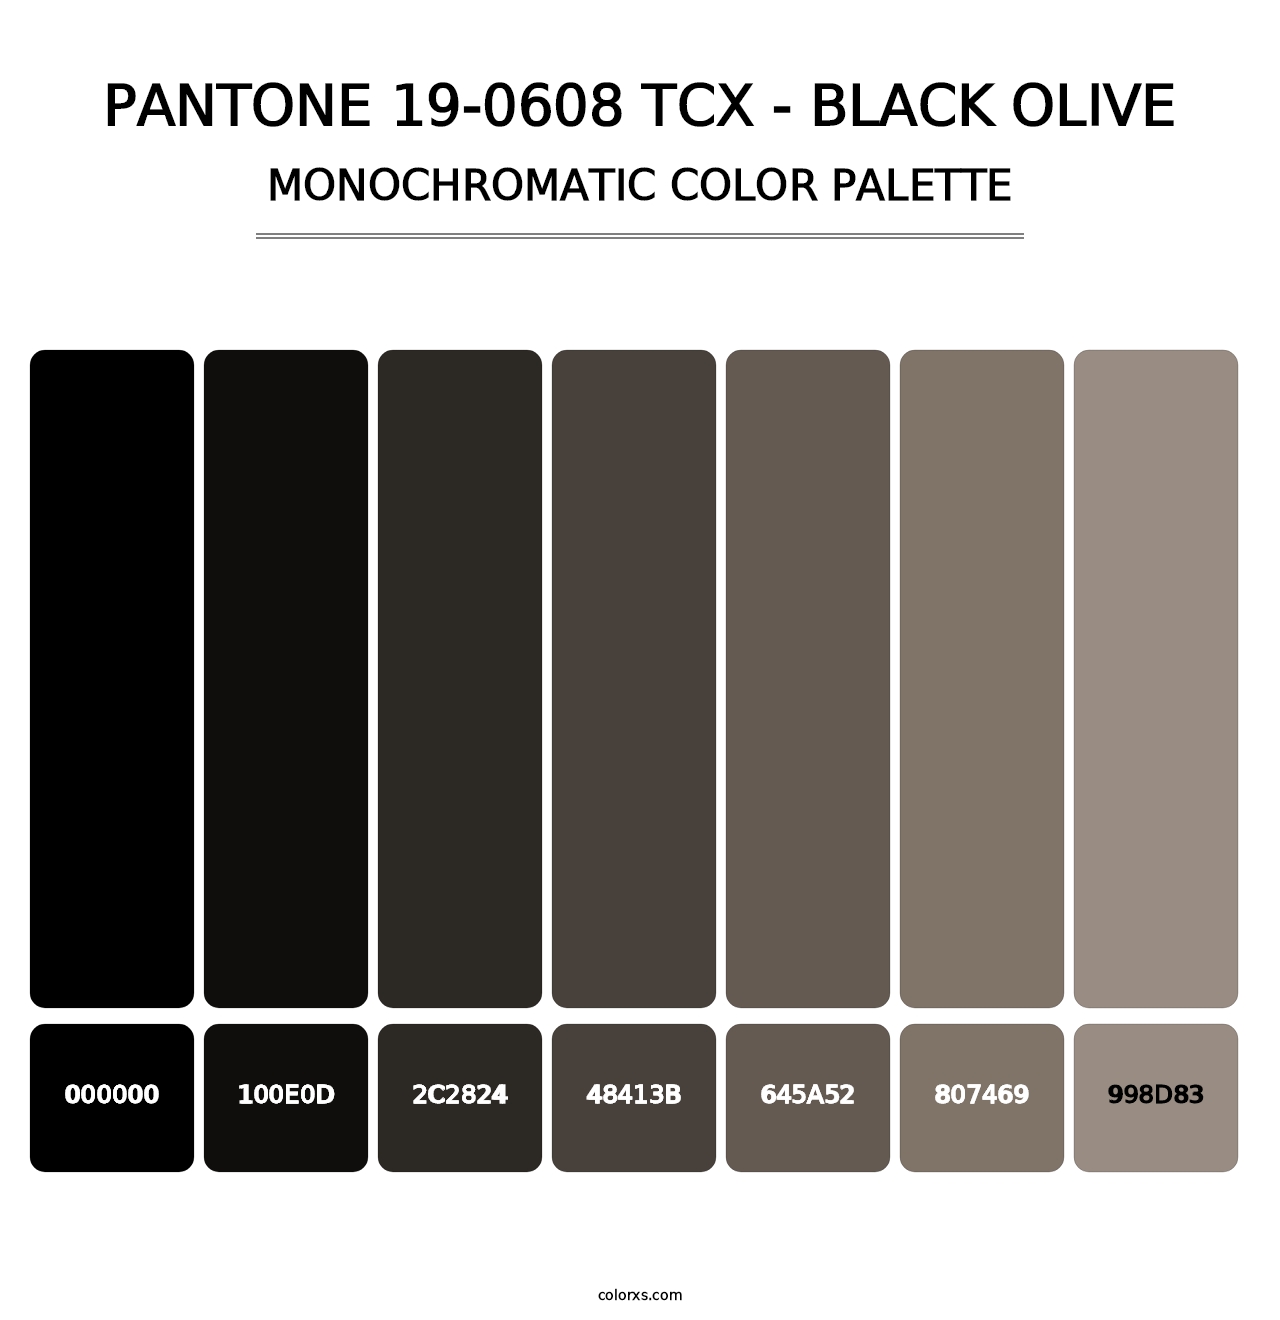 PANTONE 19-0608 TCX - Black Olive - Monochromatic Color Palette